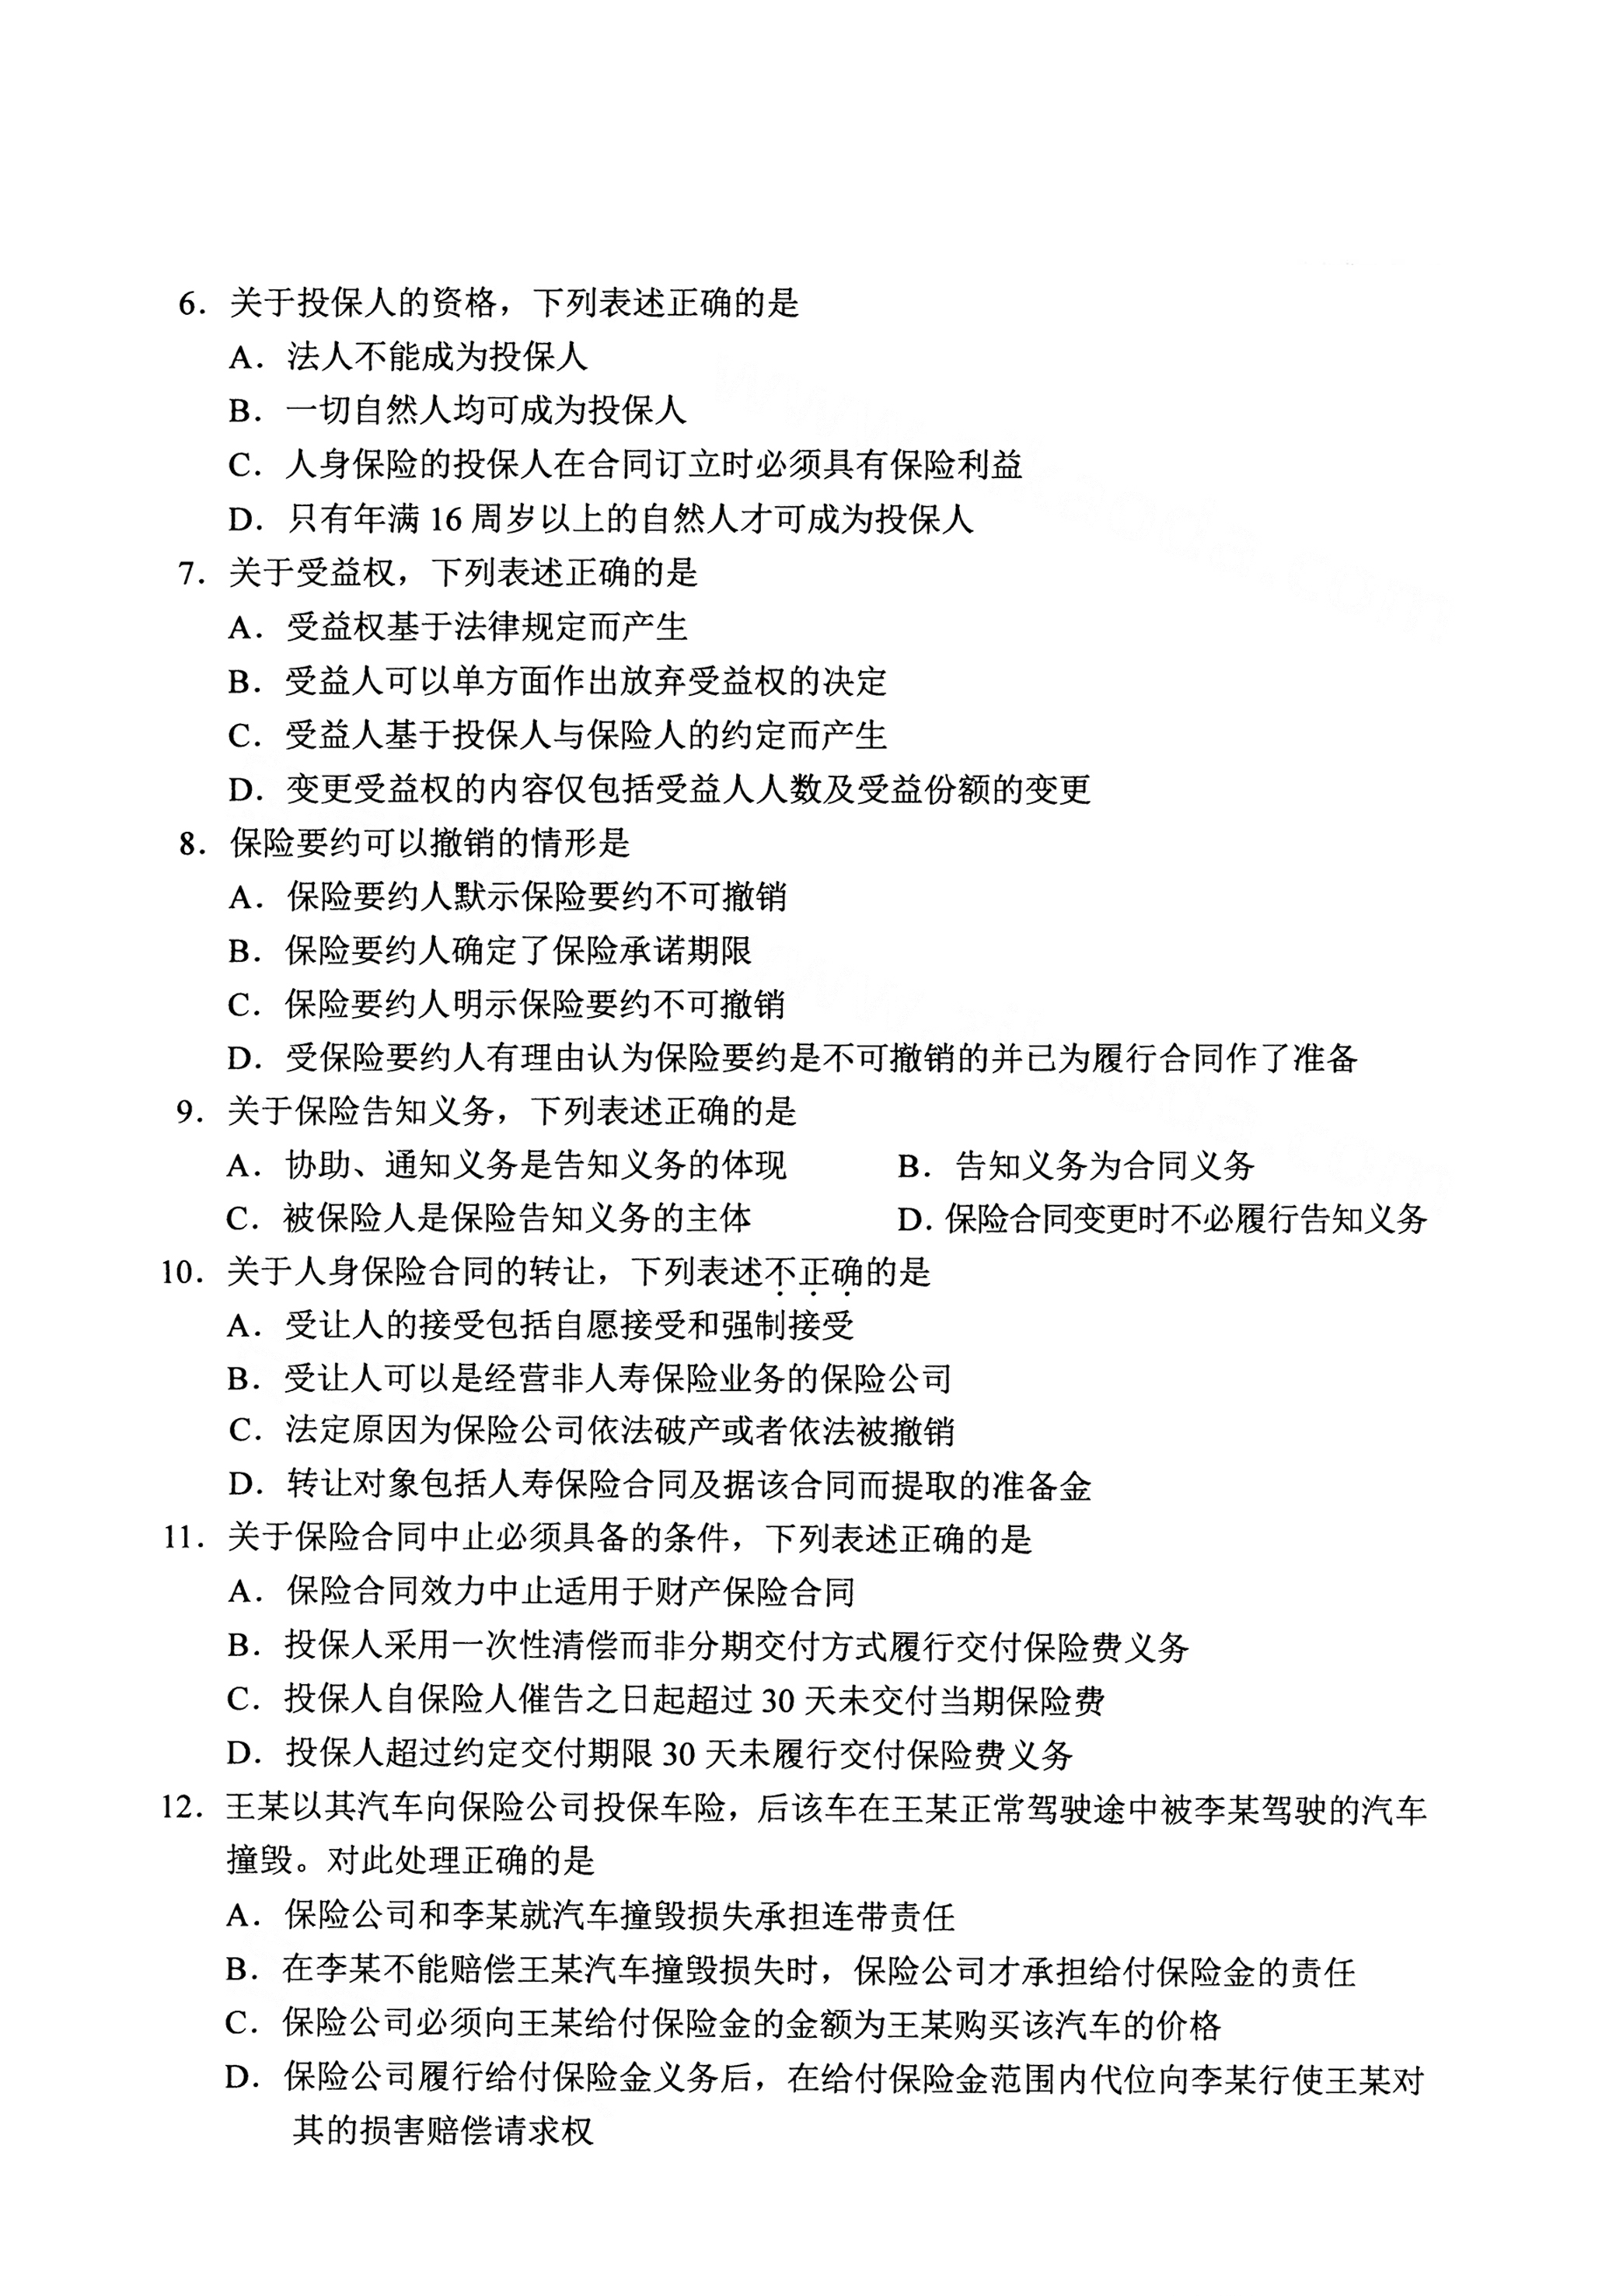 重庆自考2021年4月自考00258保险法真题试卷